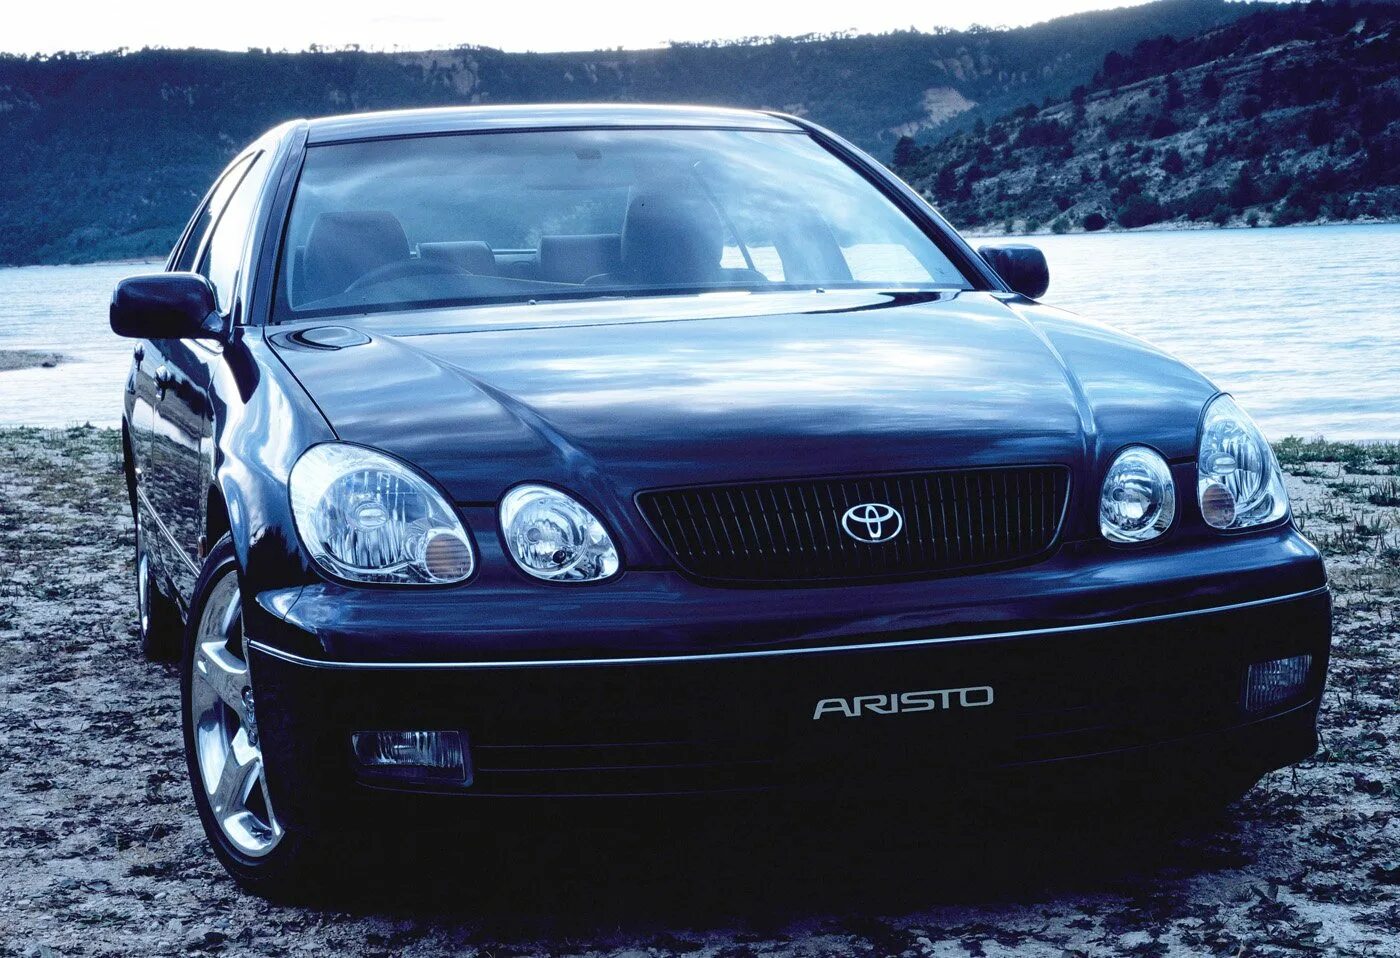 Аристо 160. Toyota Aristo. Тойота аристо s160. Lexus gs300 s160. Toyota Aristo 160.